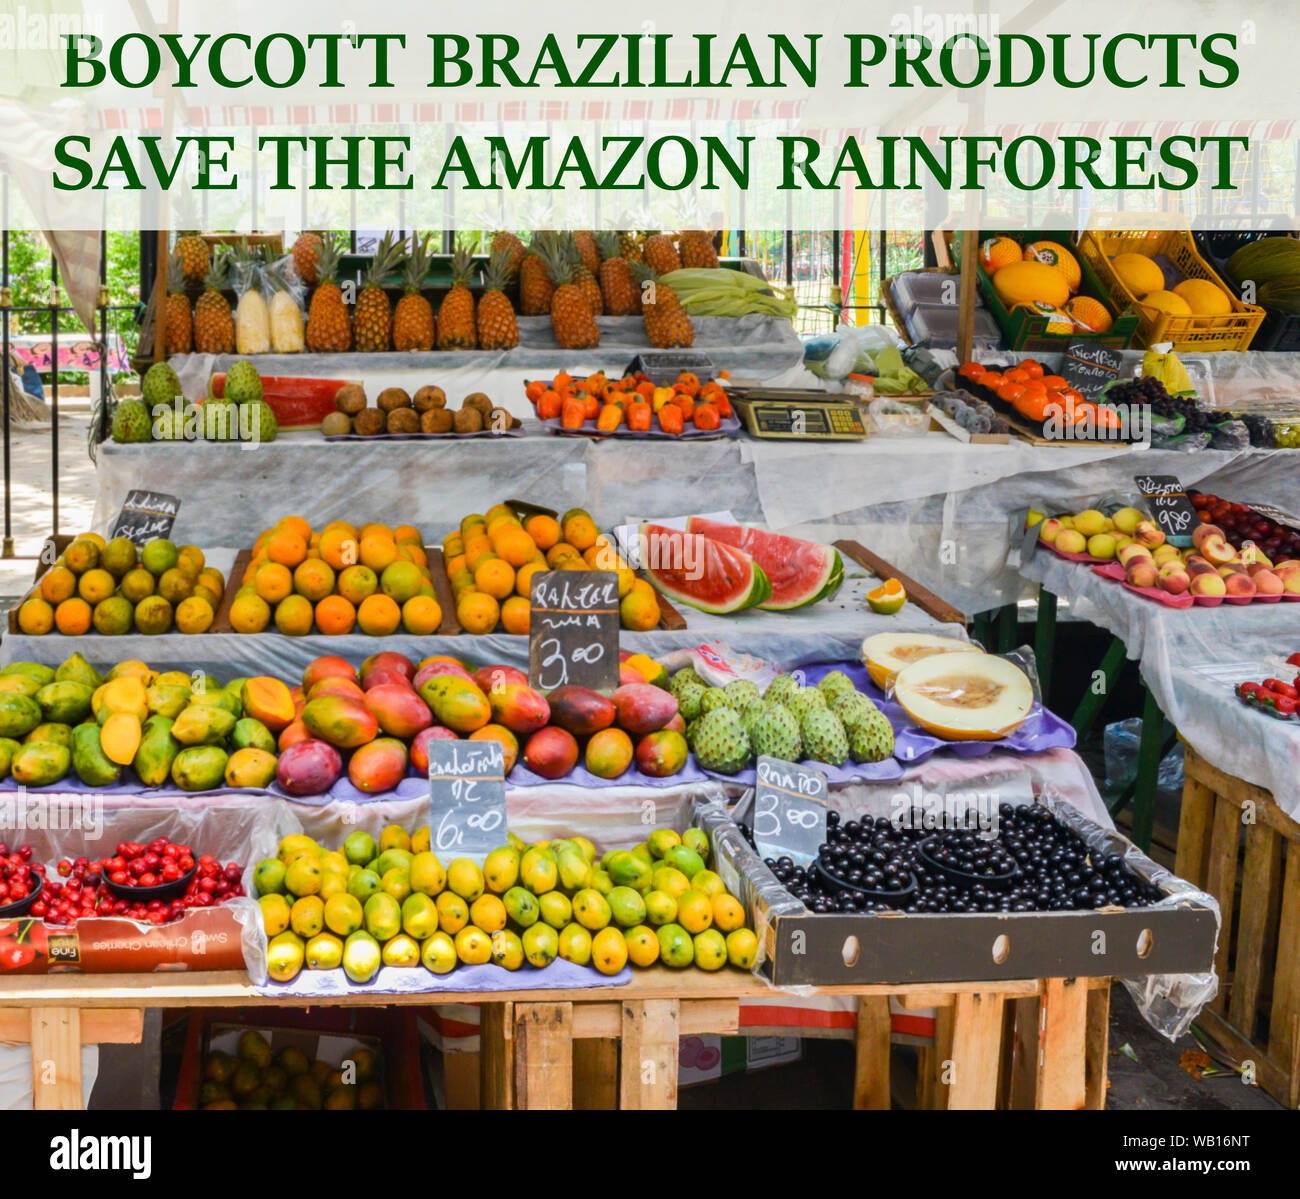 Boykott Brasilianische Produkte Nachricht Regenwald des Amazonas vor der  Zerstörung mit tropischen Früchten im Hintergrund zu speichern  Stockfotografie - Alamy